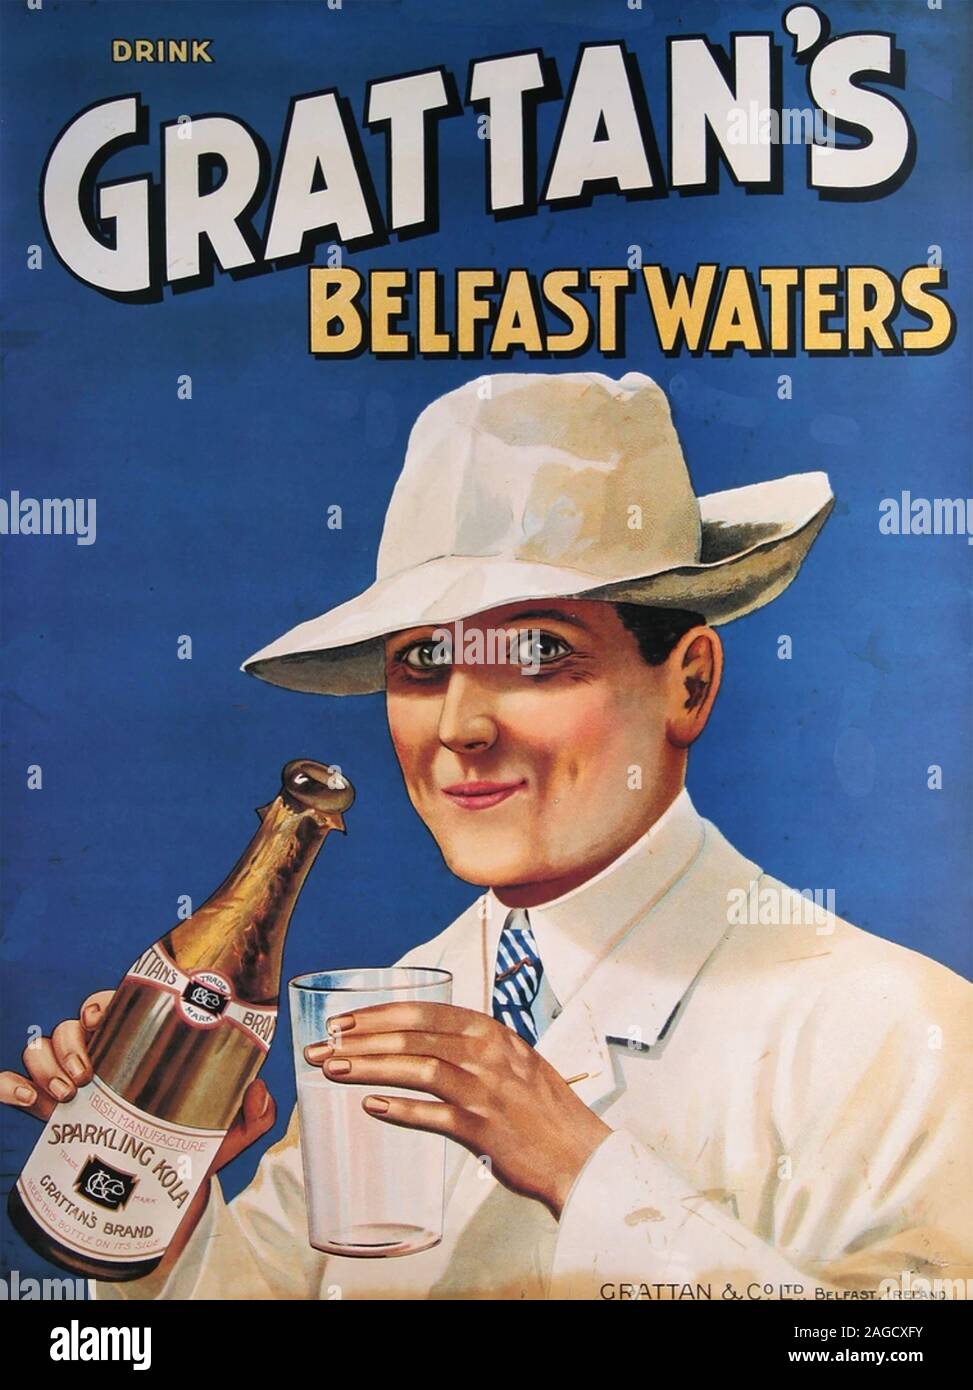 GRATTAN VON BELFAST GEWÄSSER 1920s Anzeige für eine irische Tonic trinken Stockfoto